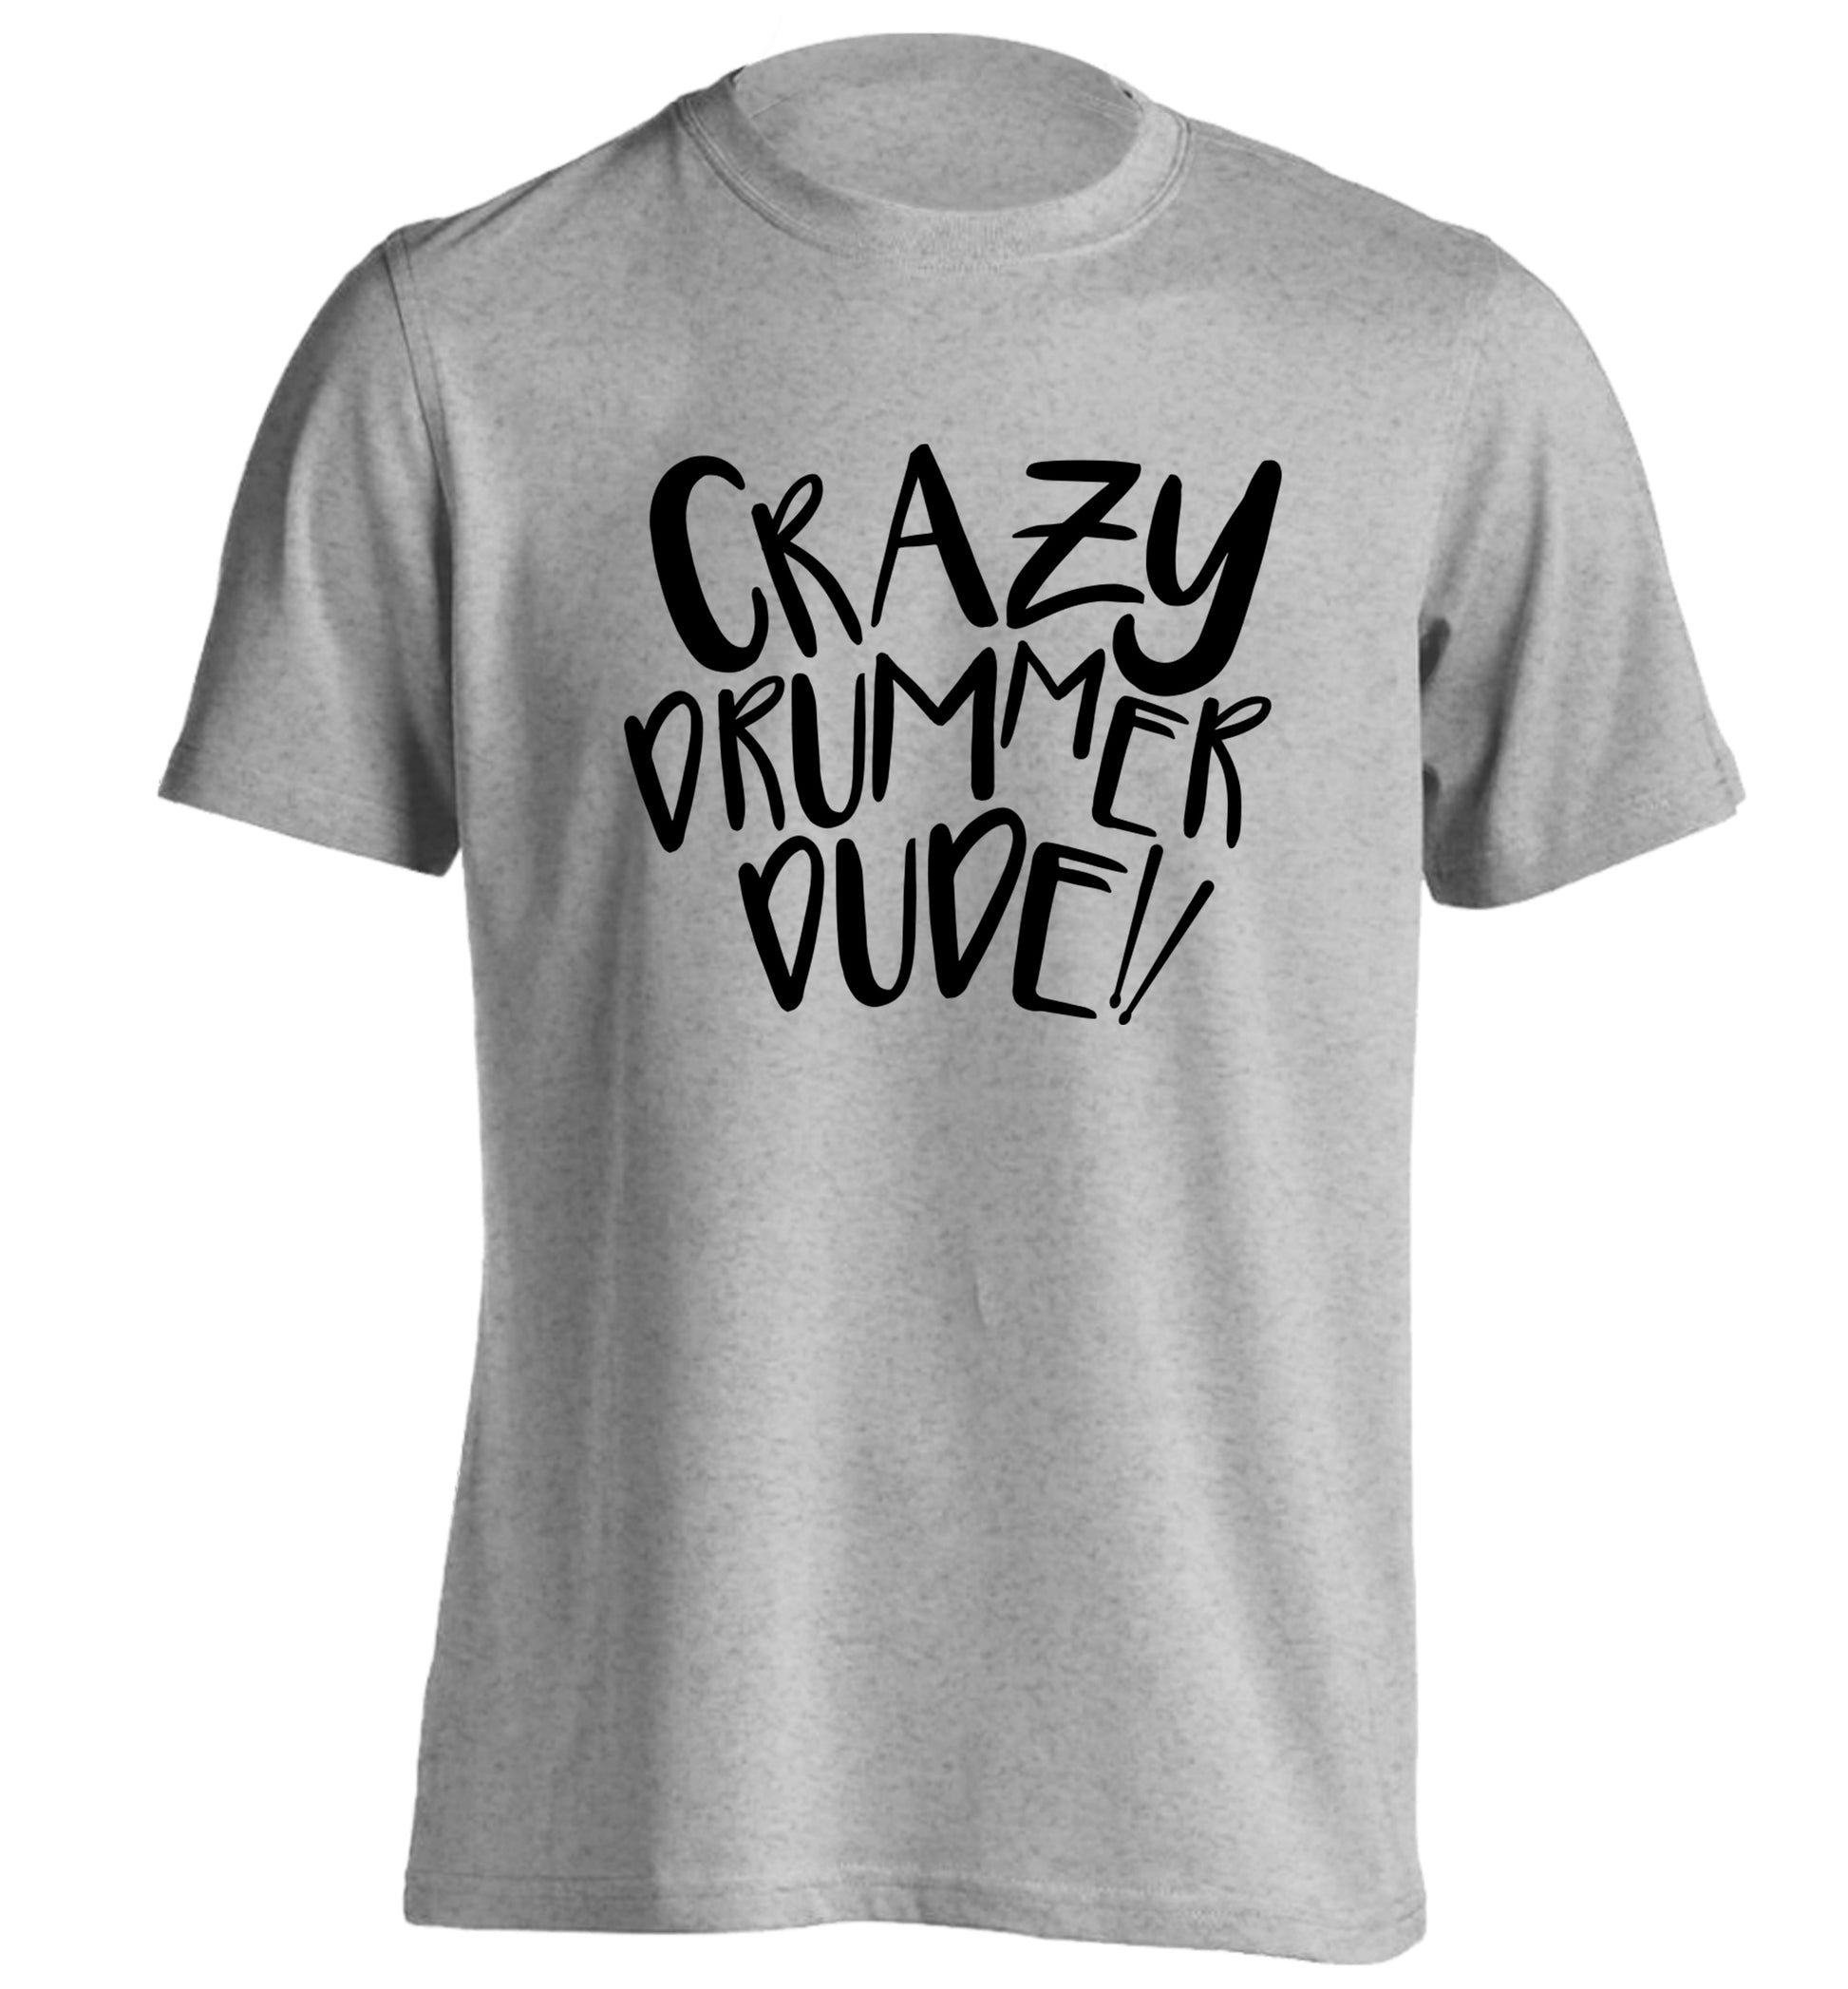 Crazy drummer dude adults unisex grey Tshirt 2XL